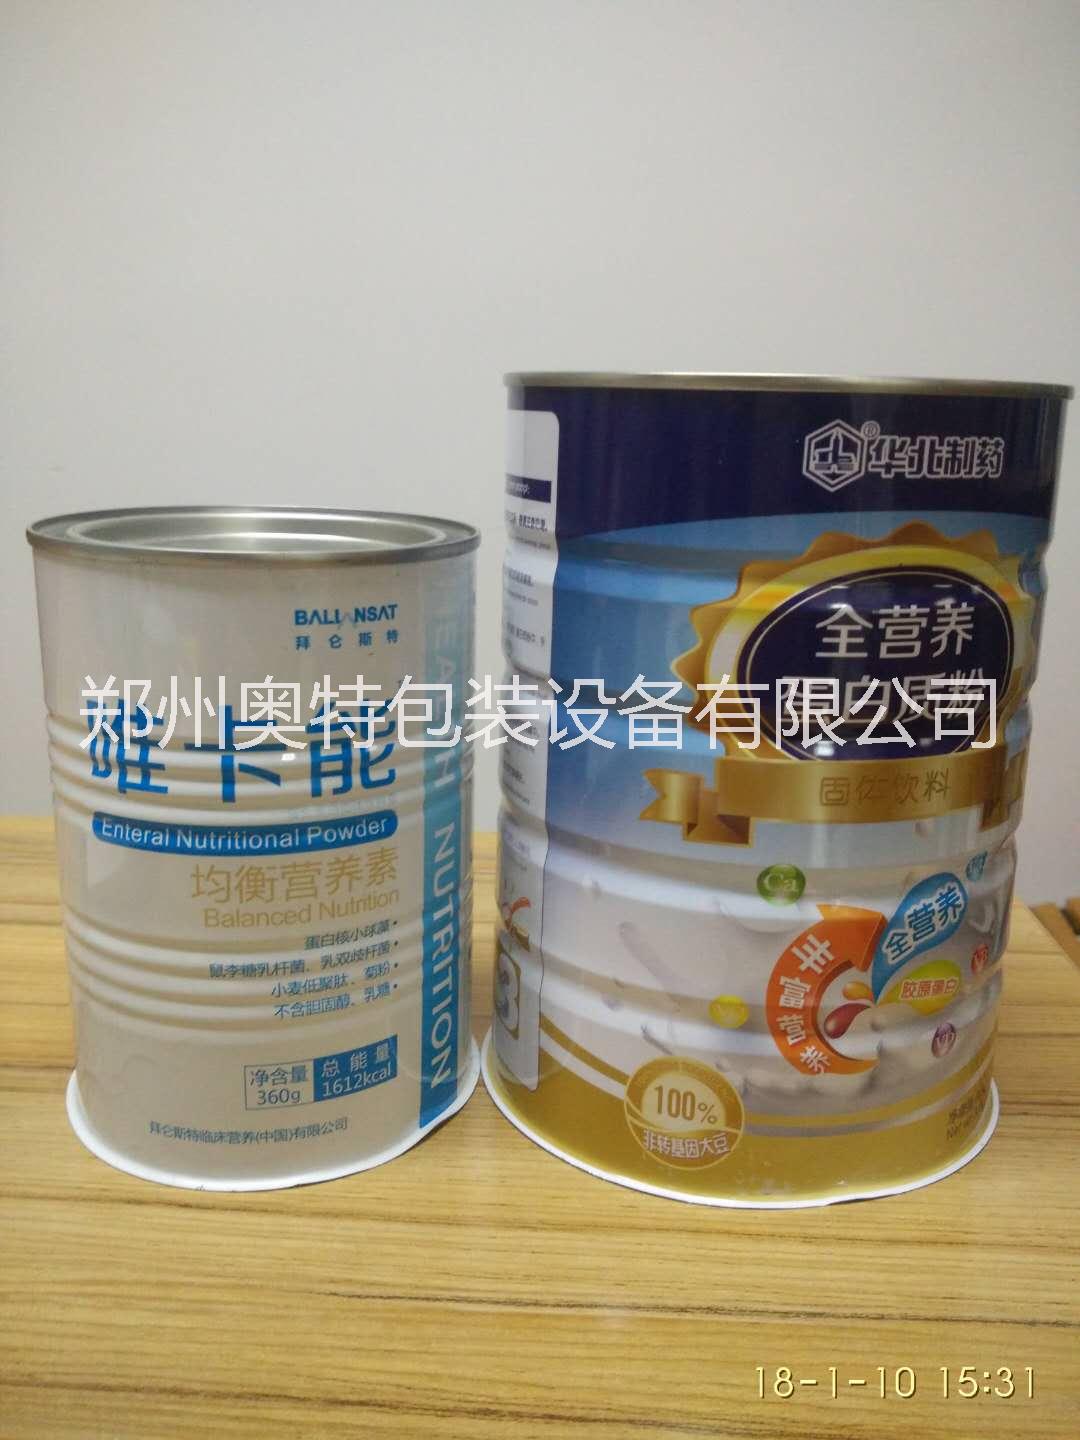 生产厂家 瓶装米粉营养粉灌装线 生产厂家 米粉营养粉铁罐灌装线